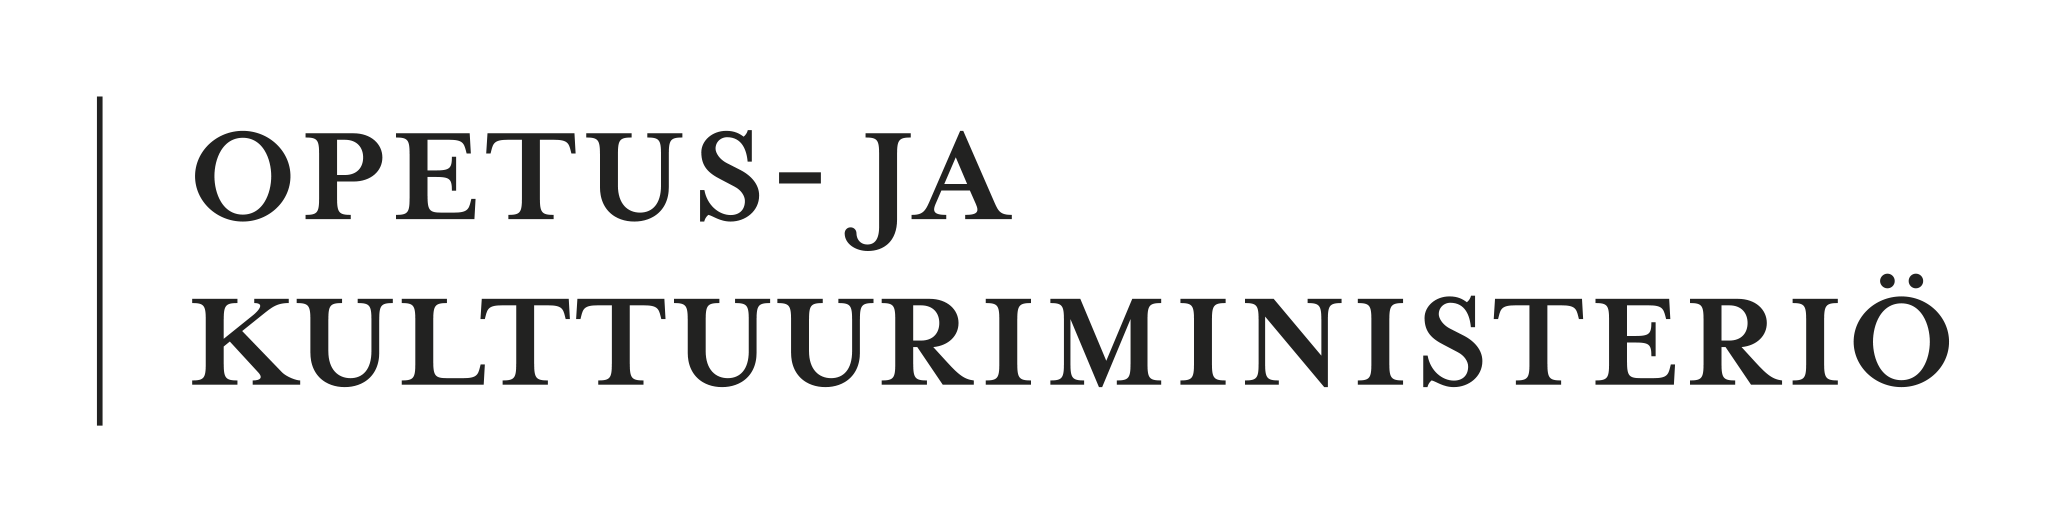 Opetus- ja kulttuuriministeriö-logo.